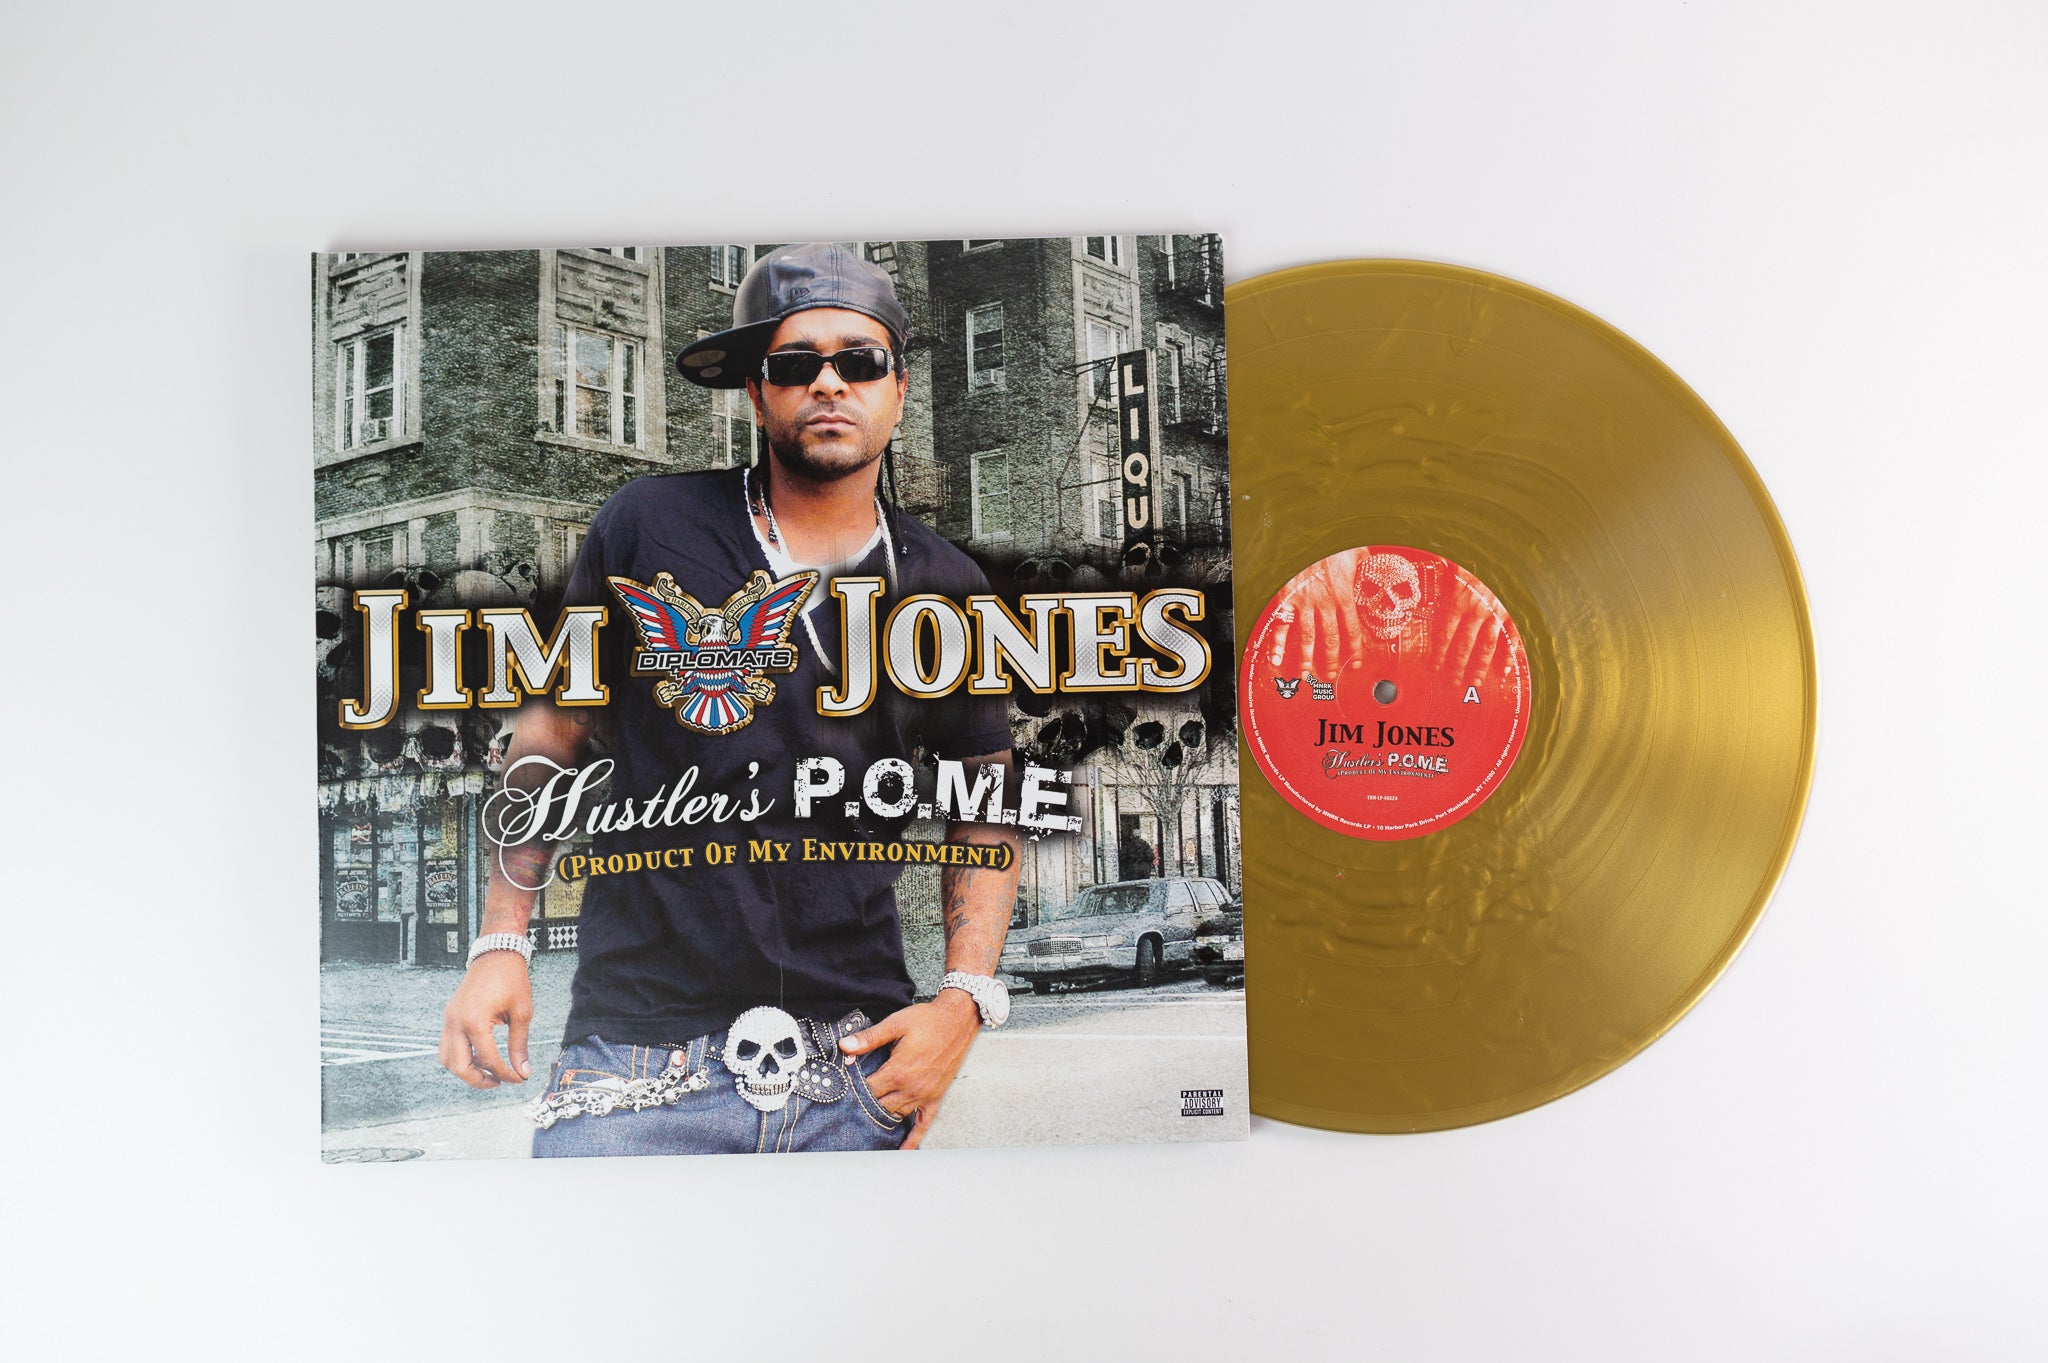 Jim Jones - Hustler's P.O.M.E. (Product Of My Environment) on Diplomats / Koch - Gold Vinyl